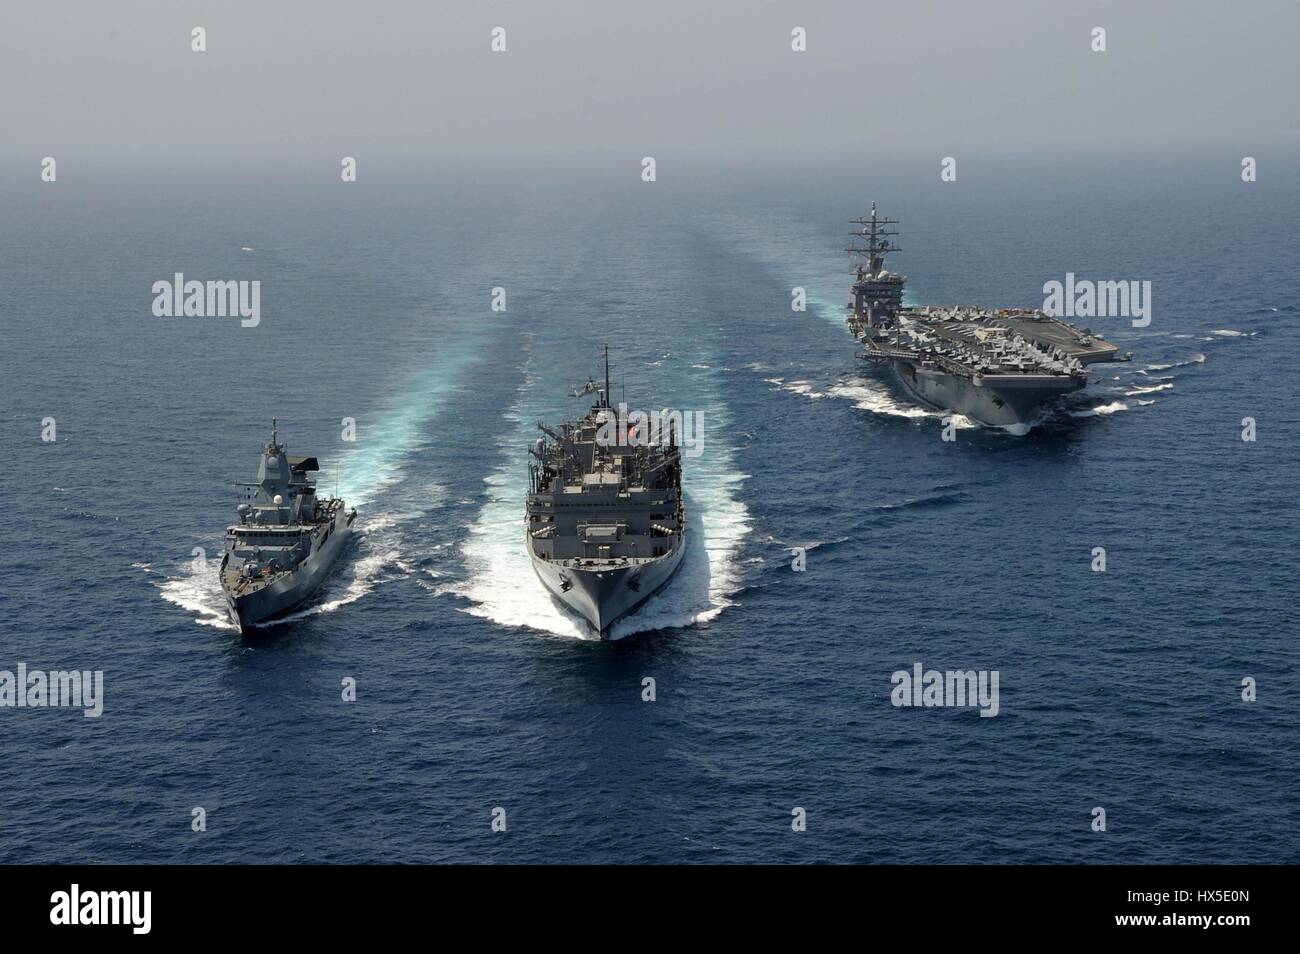 La marina militare tedesca frigate FGS Hamburd (F220), la portaerei USS Dwight D. Eisenhower CVN (69), e i militari di comando Sealift fast combattere la nave appoggio USNS Ponte (T-AOE 10) durante un rifornimento in mare, mare Arabico, Marzo 23, 2013. Immagine cortesia Ryan D. McLearnon/US Navy. Foto Stock